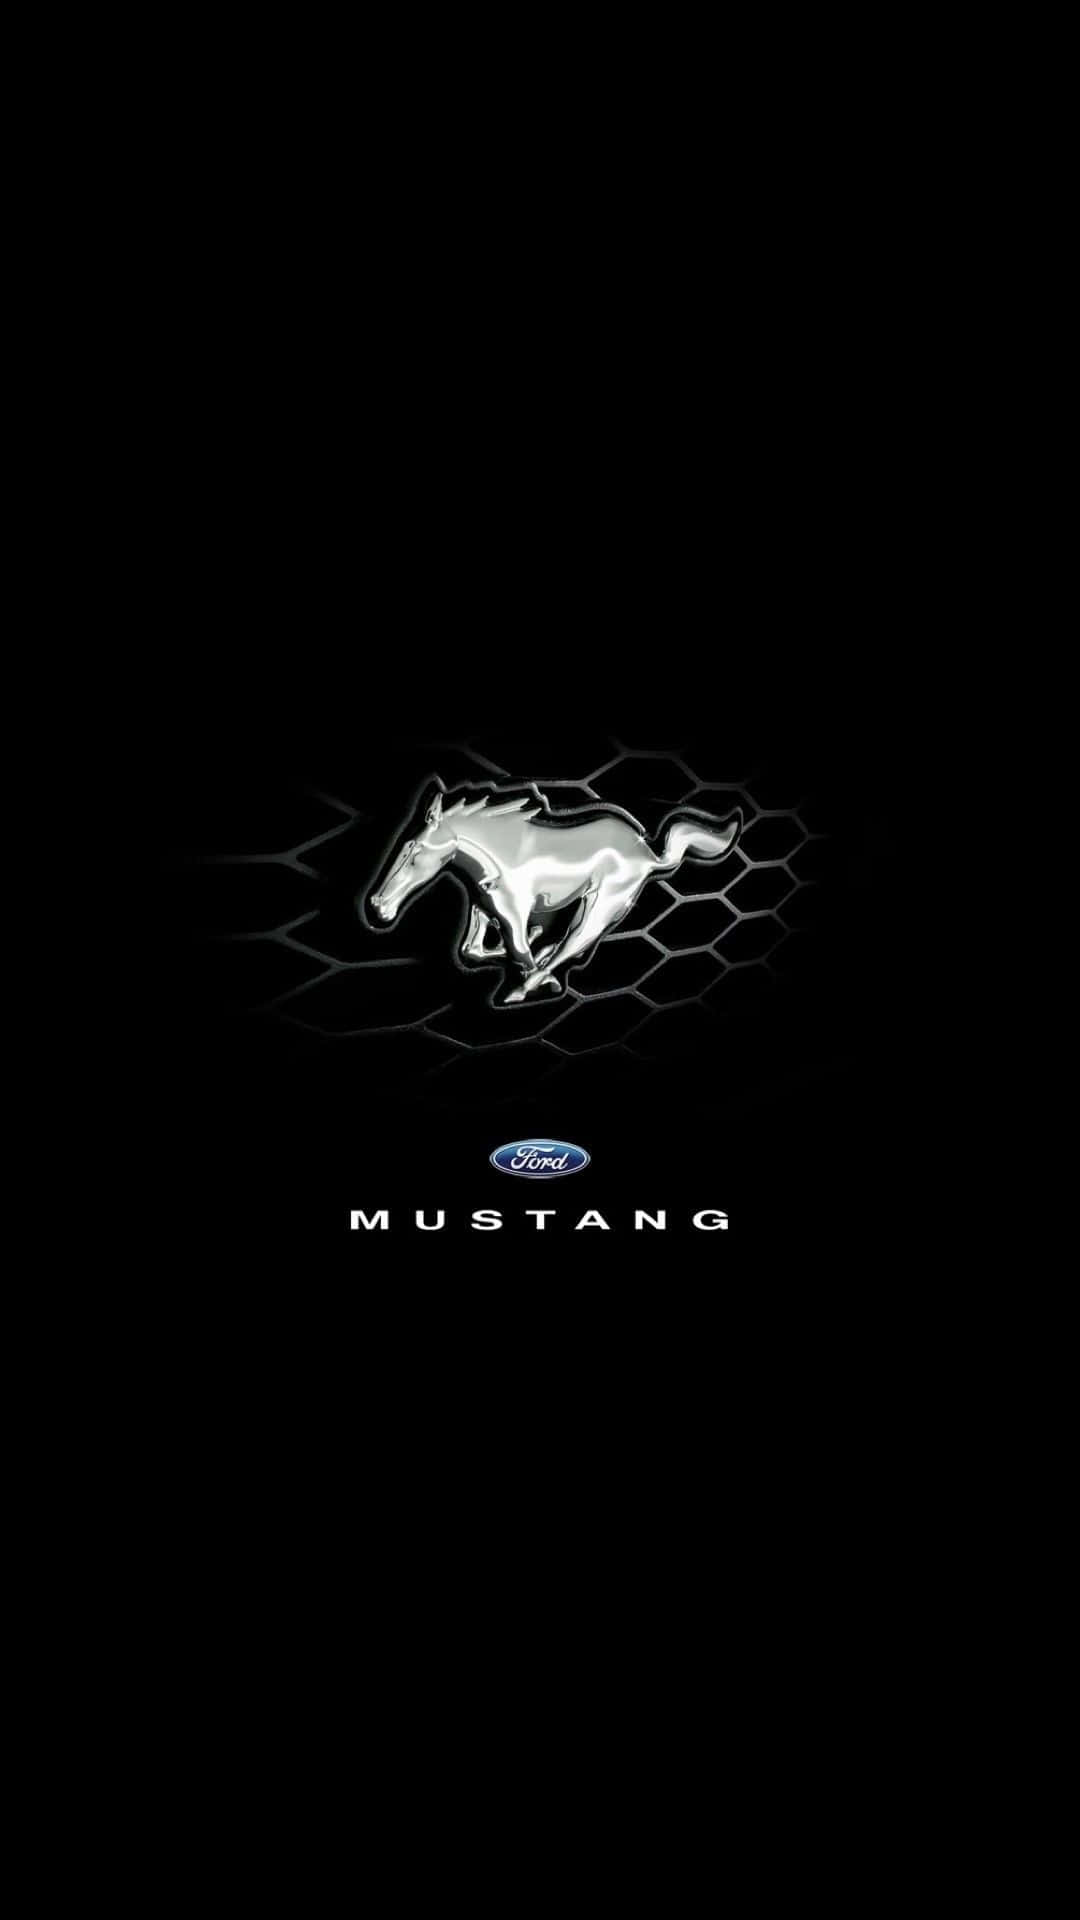 Ford Mustang Logo Aesthetic Wallpaper